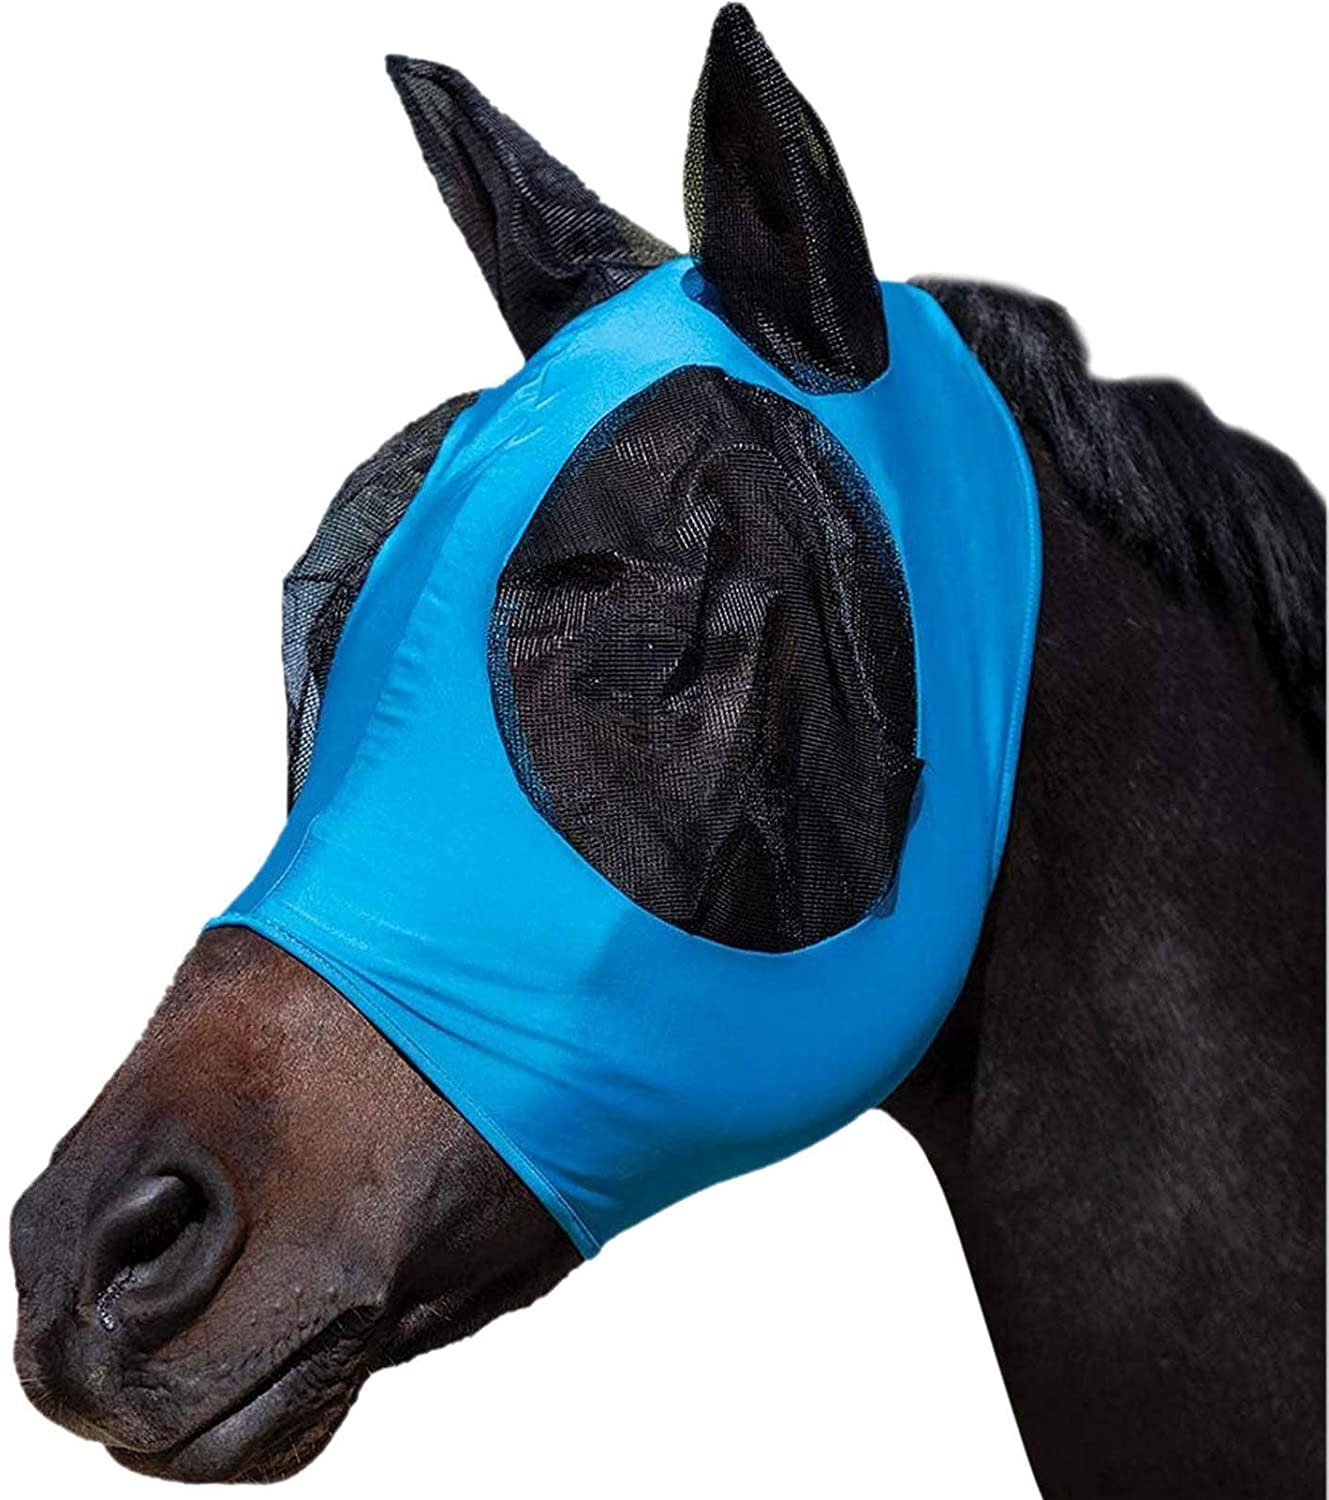 zggzerg Fliegenmasken Zggzerg Pferd Fliegenmaske Hervorragender Komfort Blau | Fliegenmasken